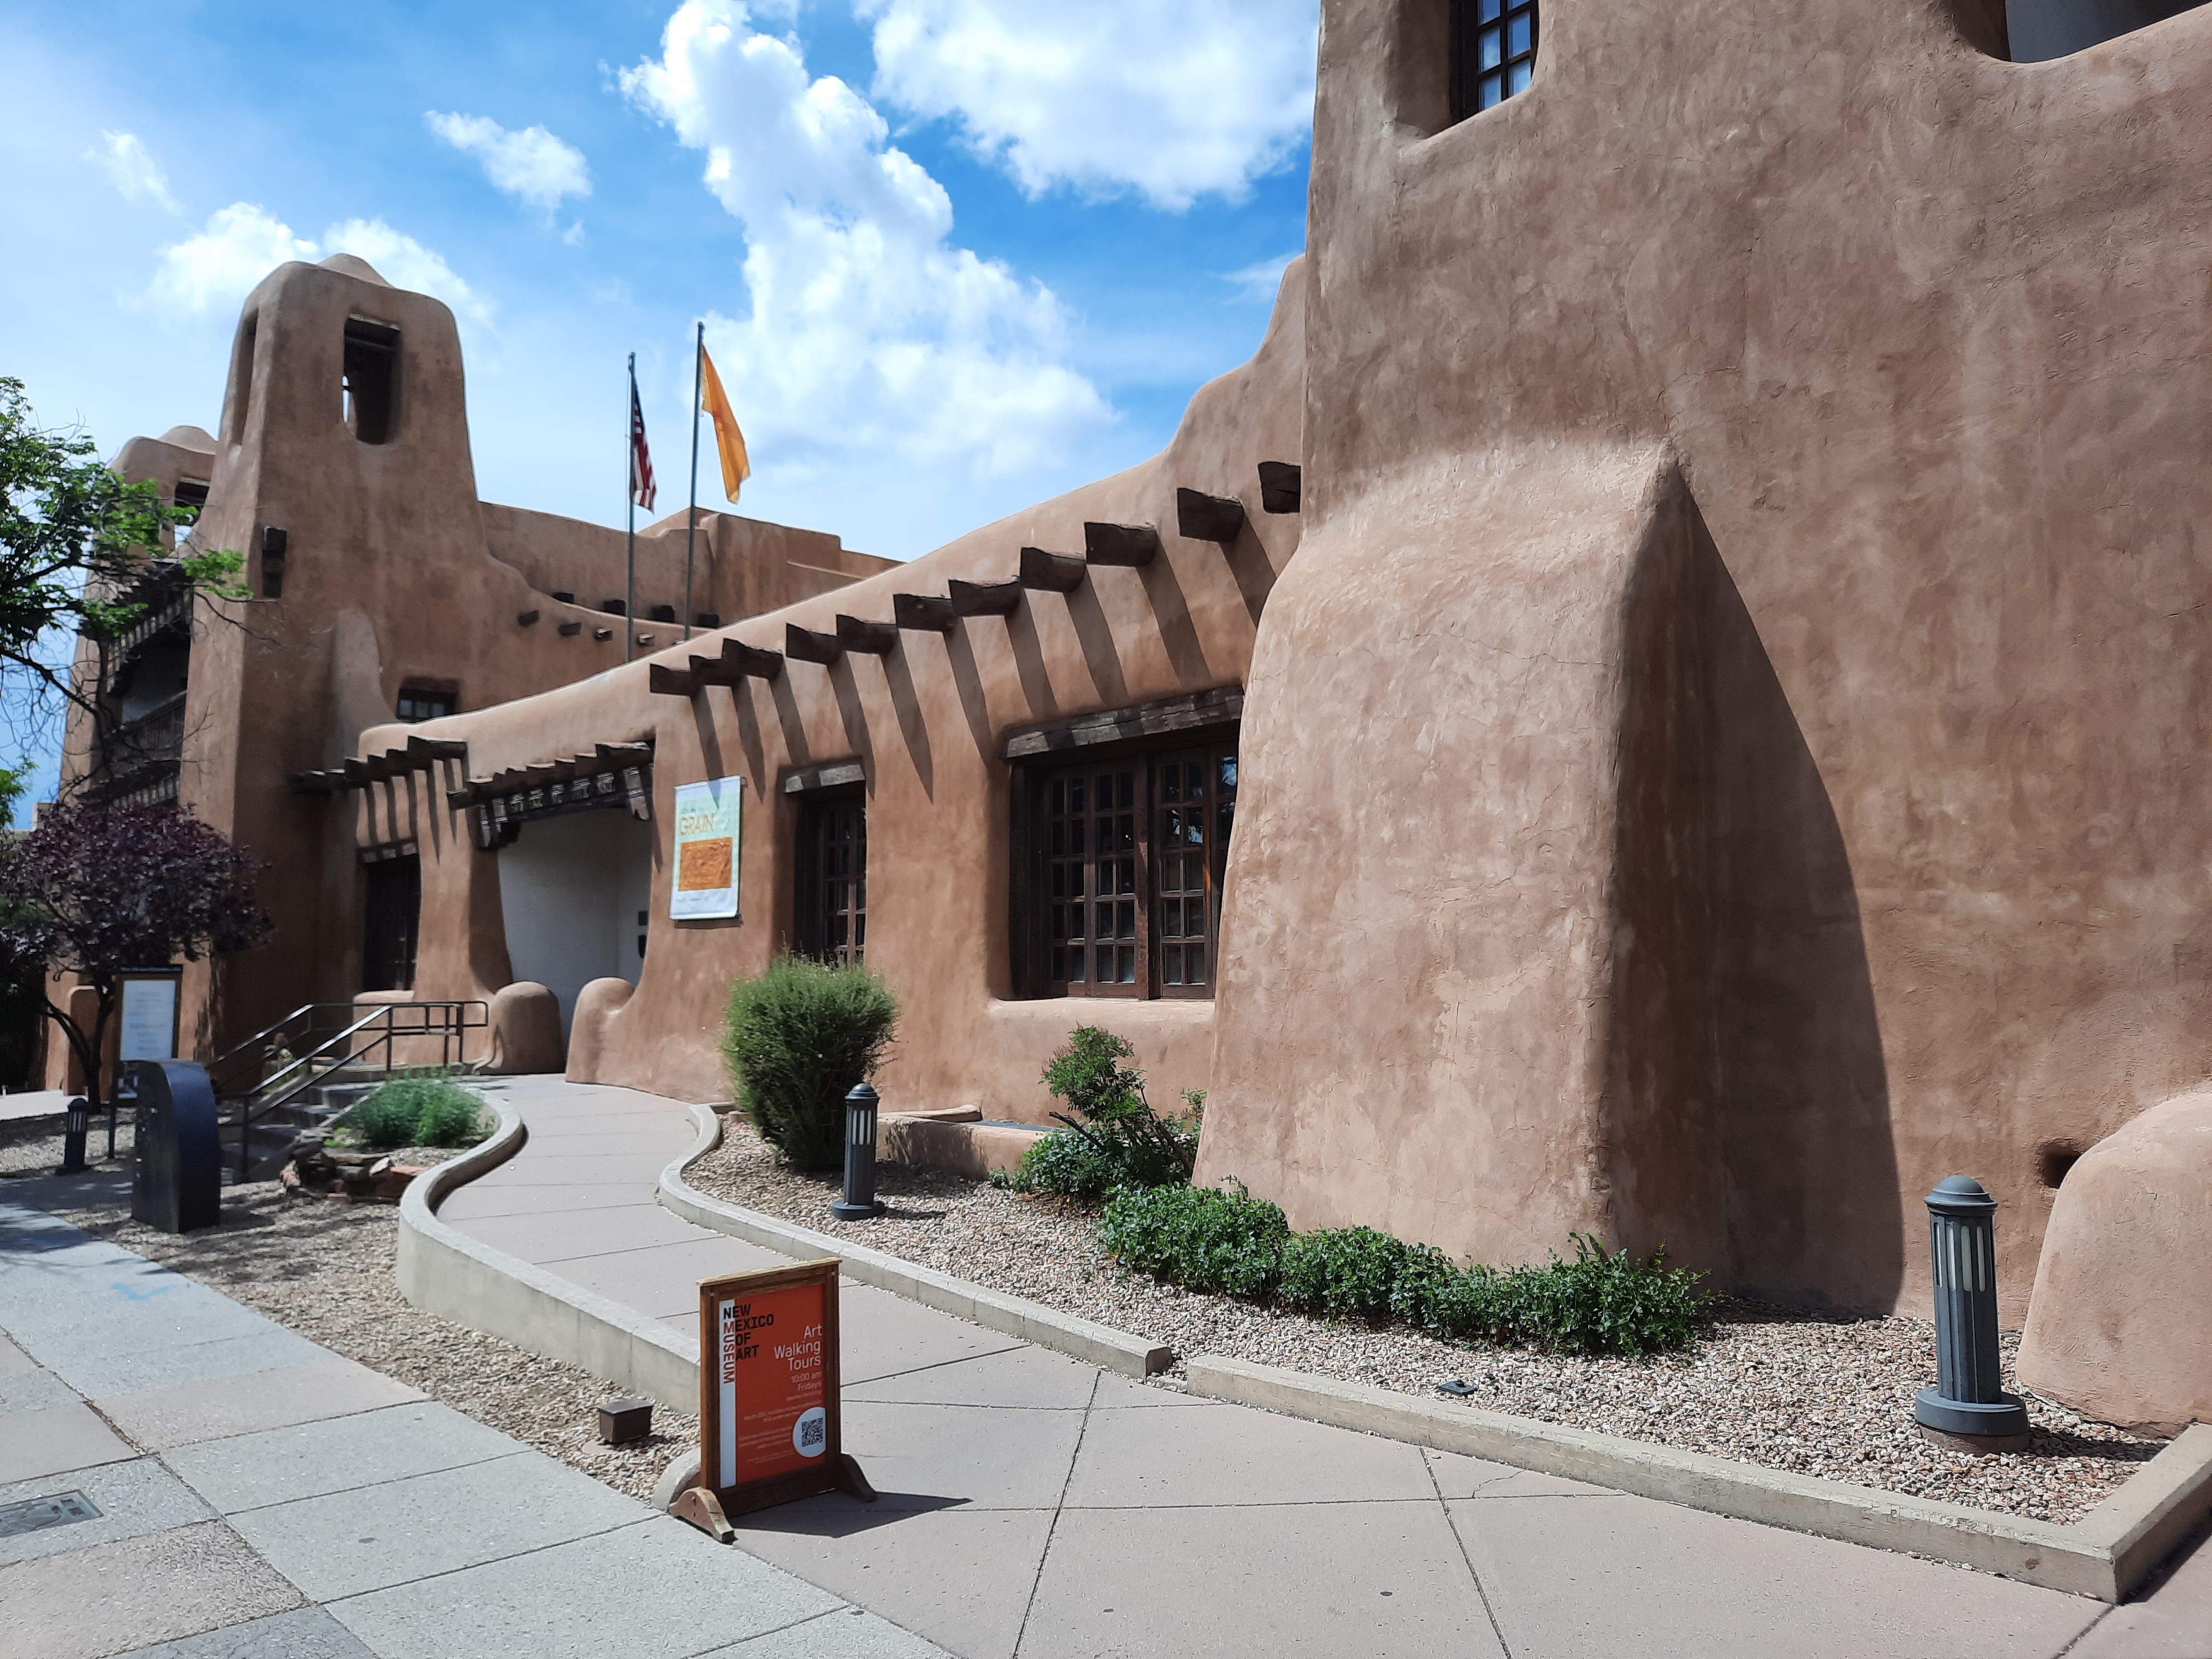 sights and food of Santa Fe, New Mexico 